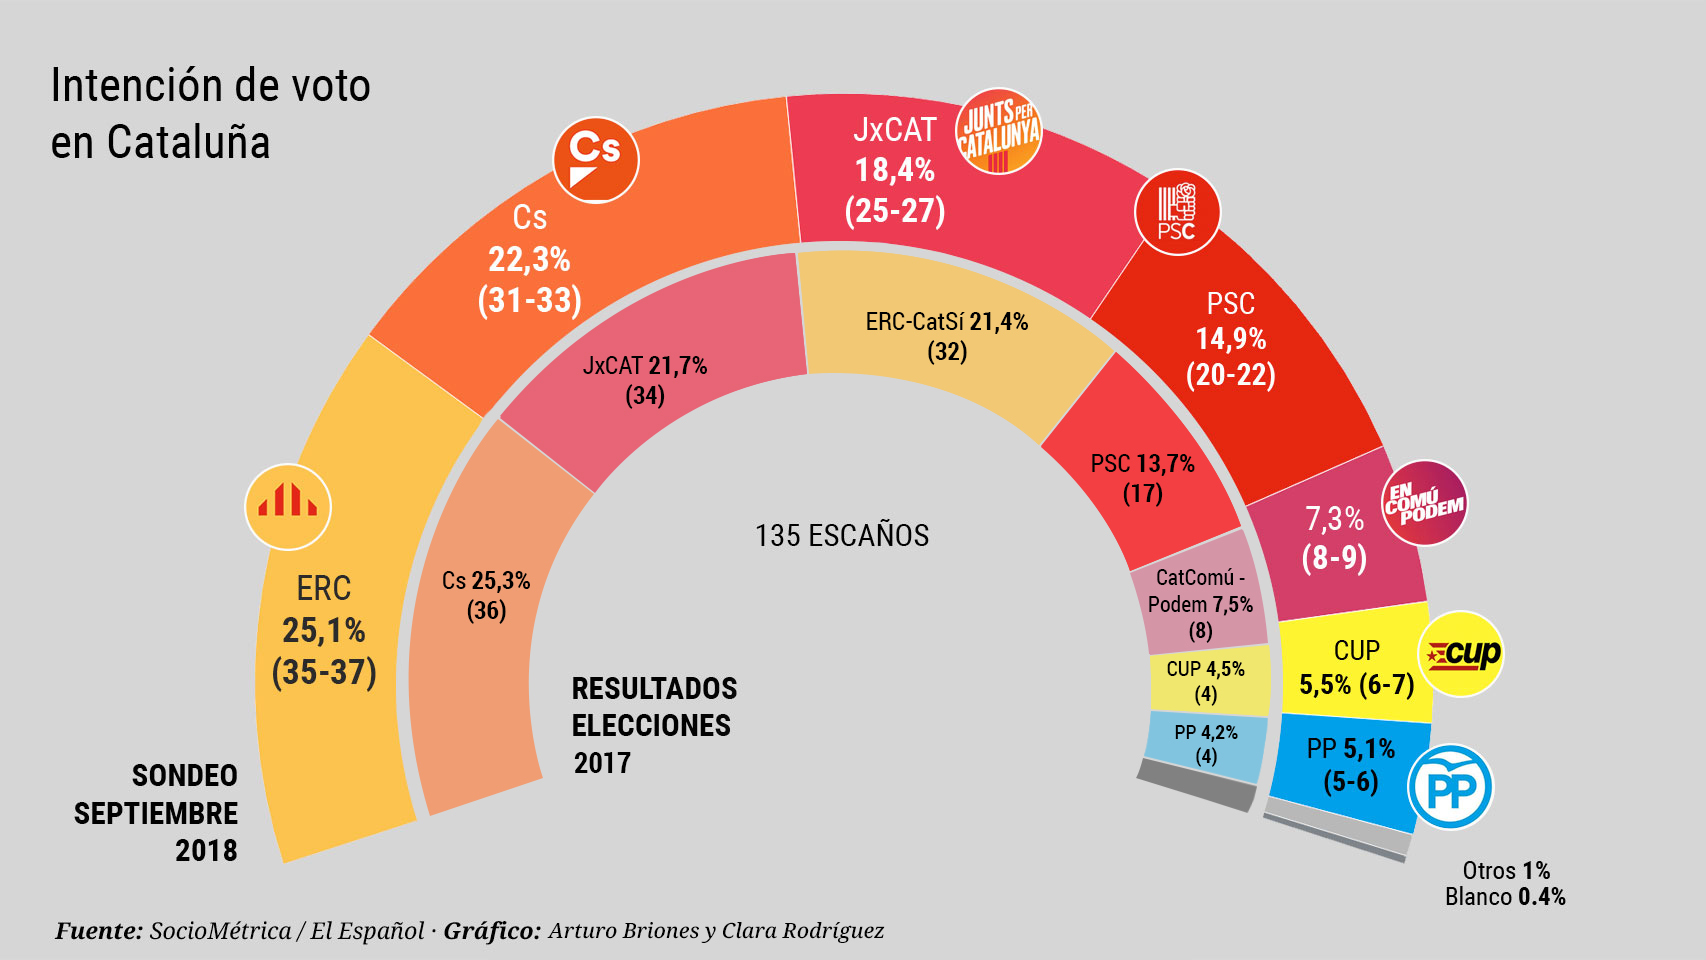 Intención de voto en Cataluña si las elecciones se celebrasen ahora.